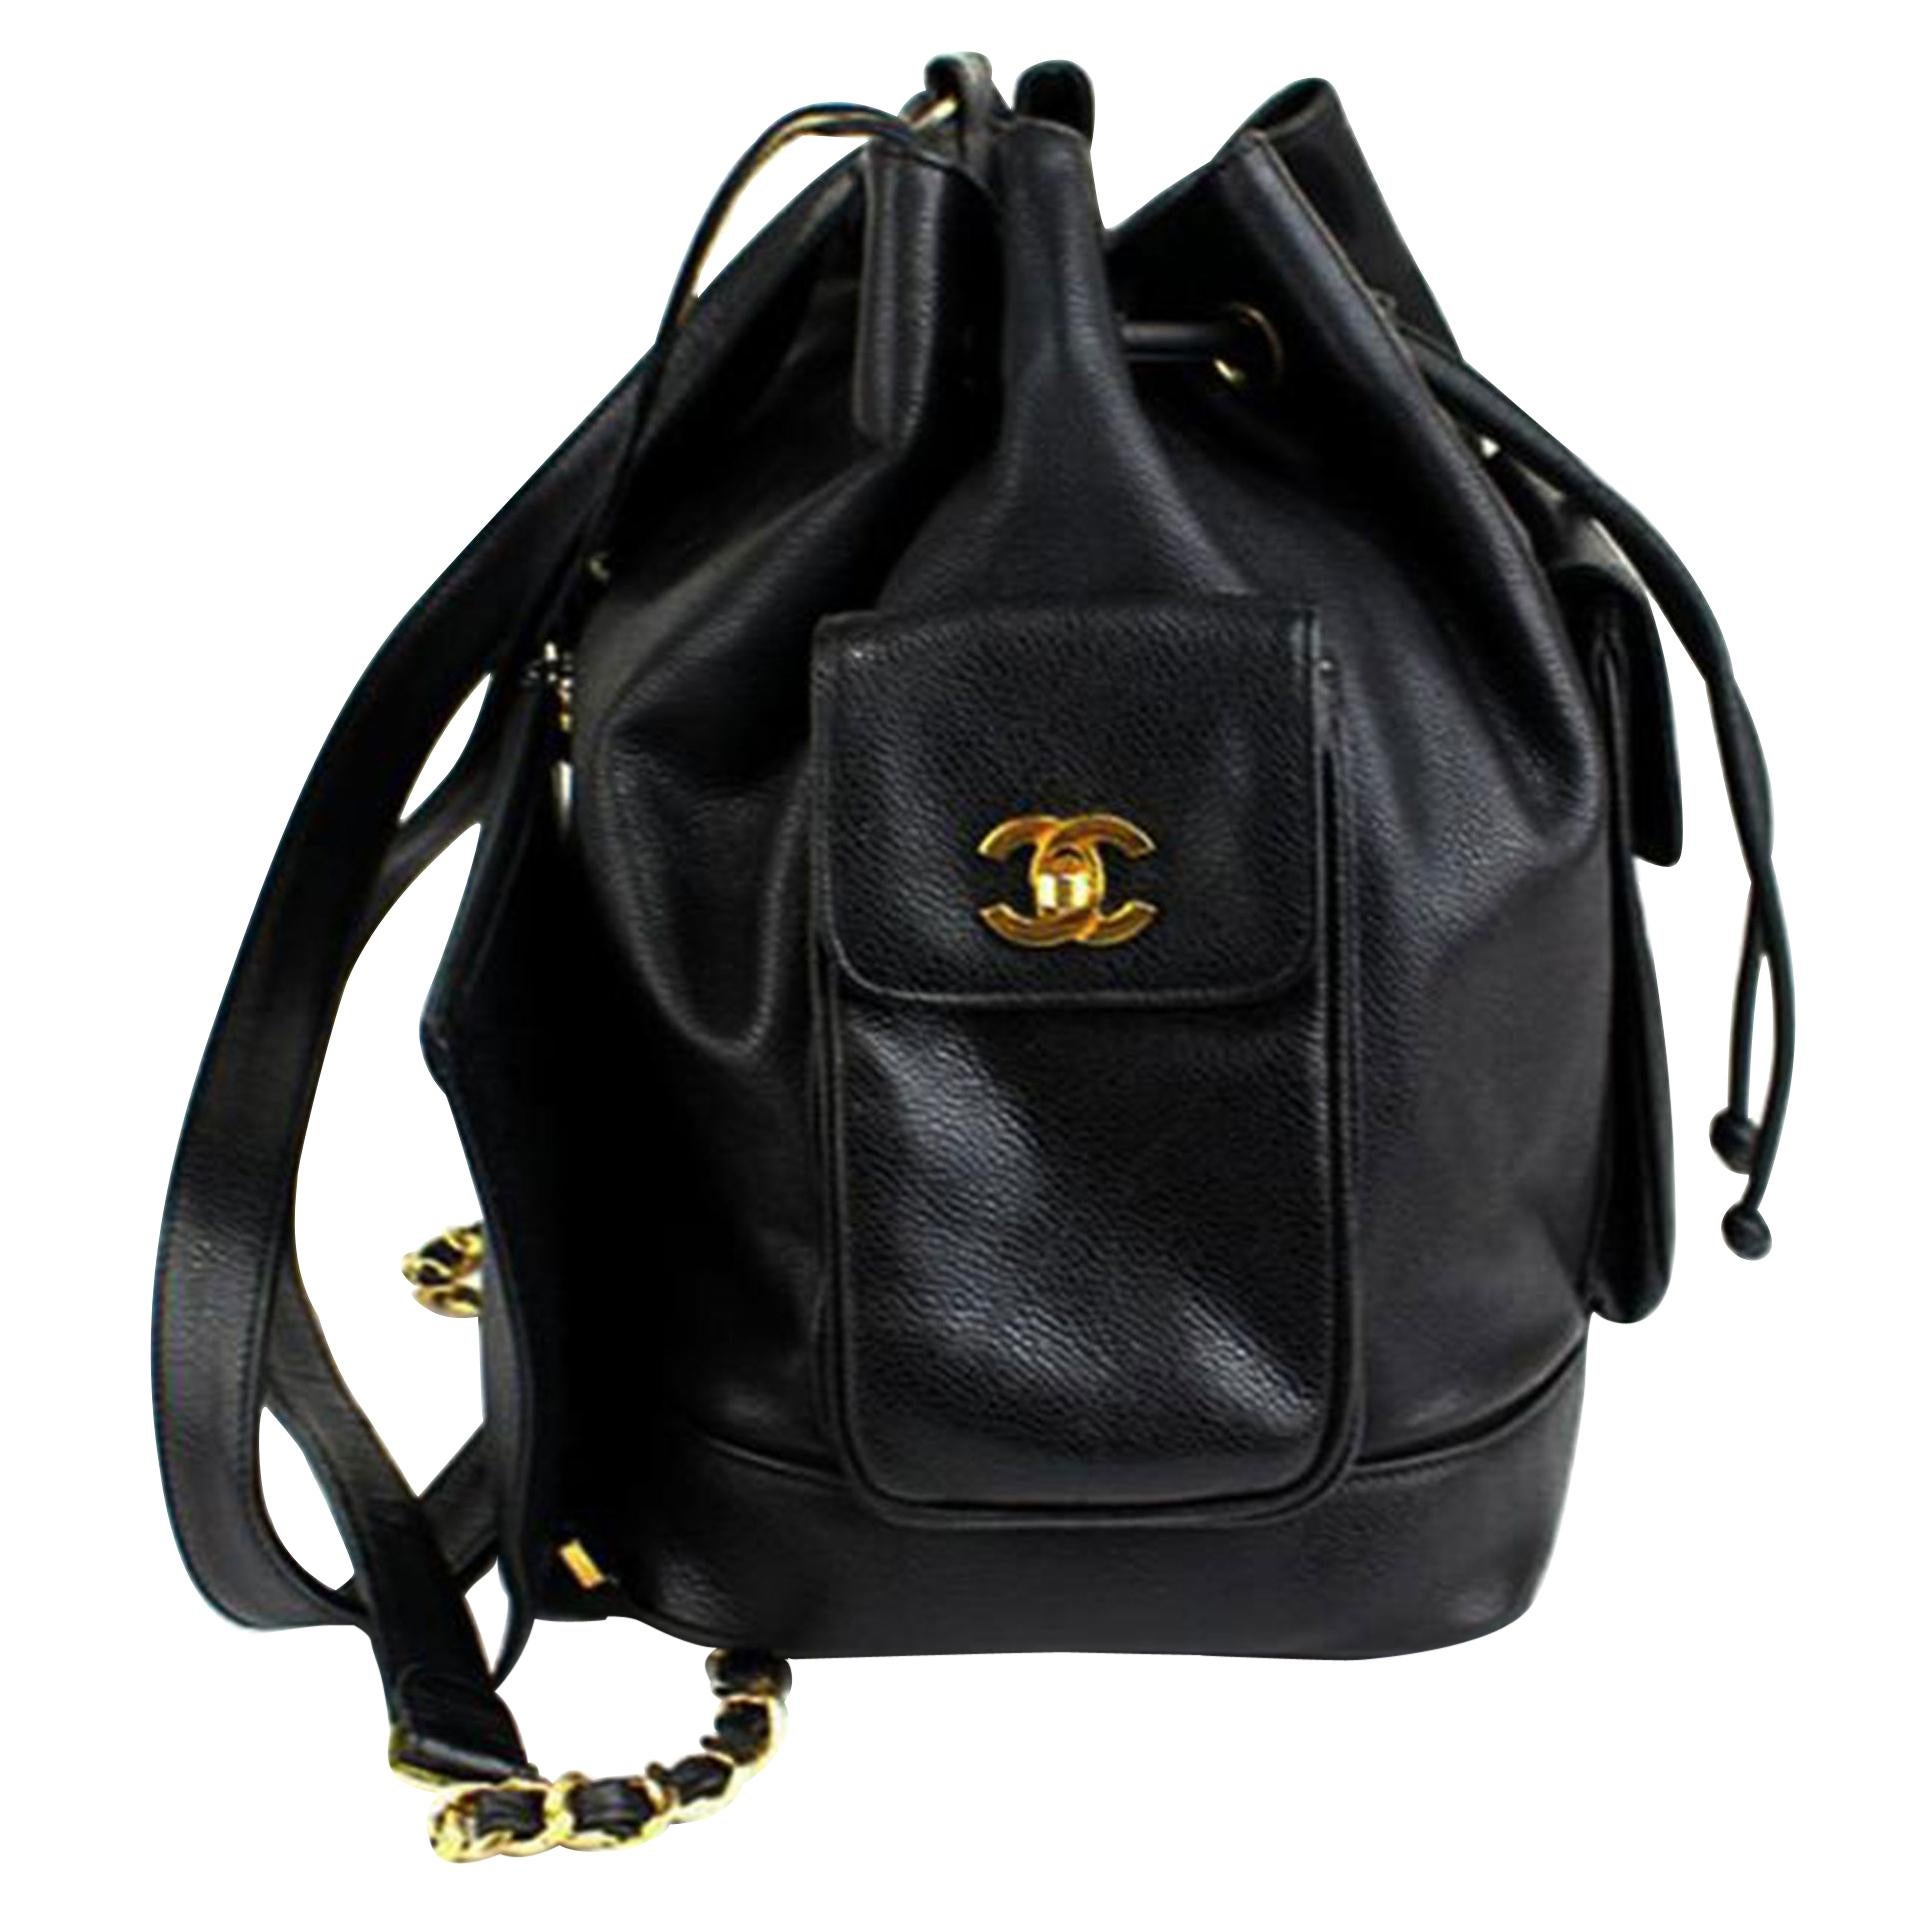 Chanel Rucksack - 8 For Sale on 1stDibs | vintage chanel backpack, chanel  rucsac, rucsac chanel graffiti